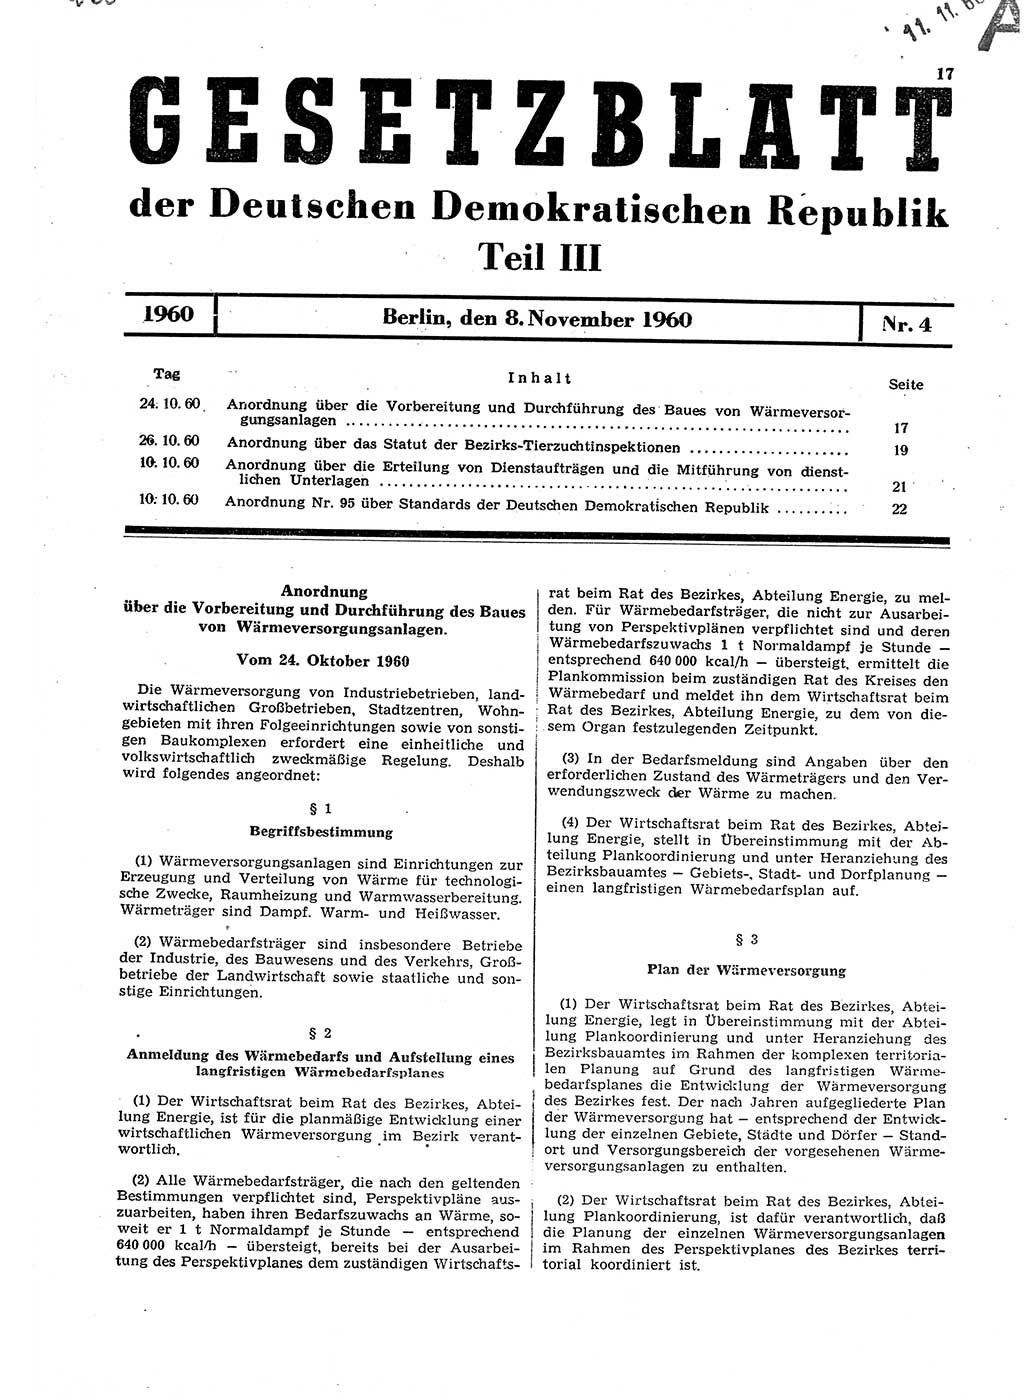 Gesetzblatt (GBl.) der Deutschen Demokratischen Republik (DDR) Teil ⅠⅠⅠ 1960, Seite 17 (GBl. DDR ⅠⅠⅠ 1960, S. 17)